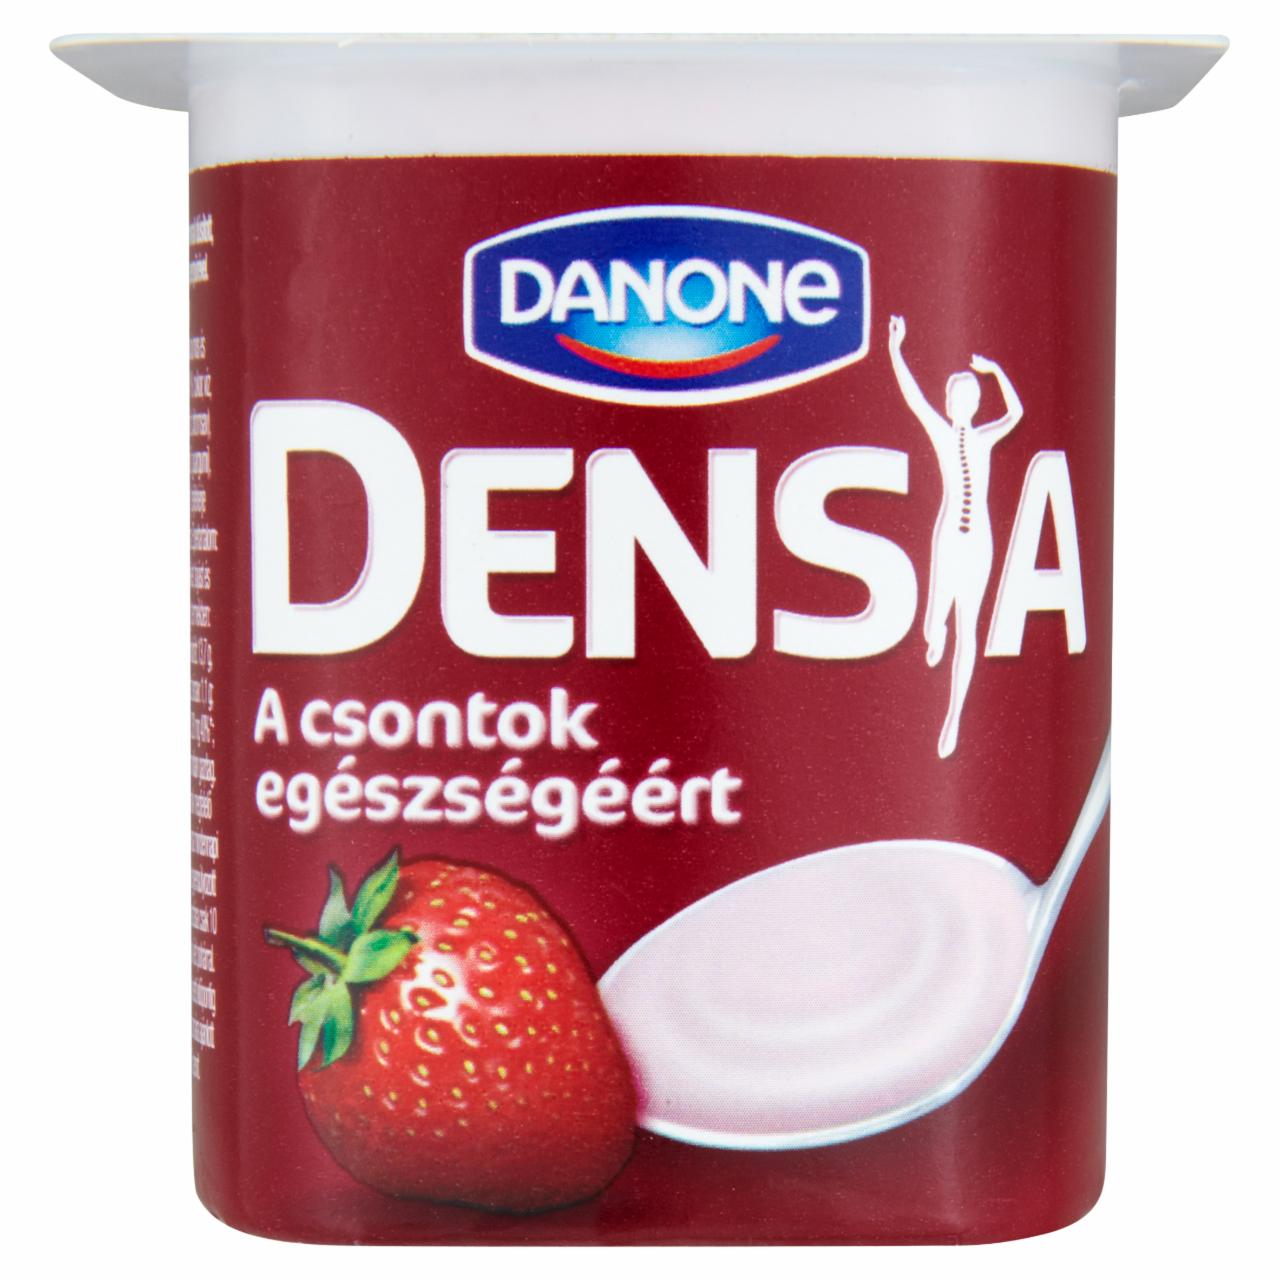 Képek - Danone Densia kalciummal és D-vitaminnal dúsított, élőflórás, zsírszegény epres joghurt 125 g